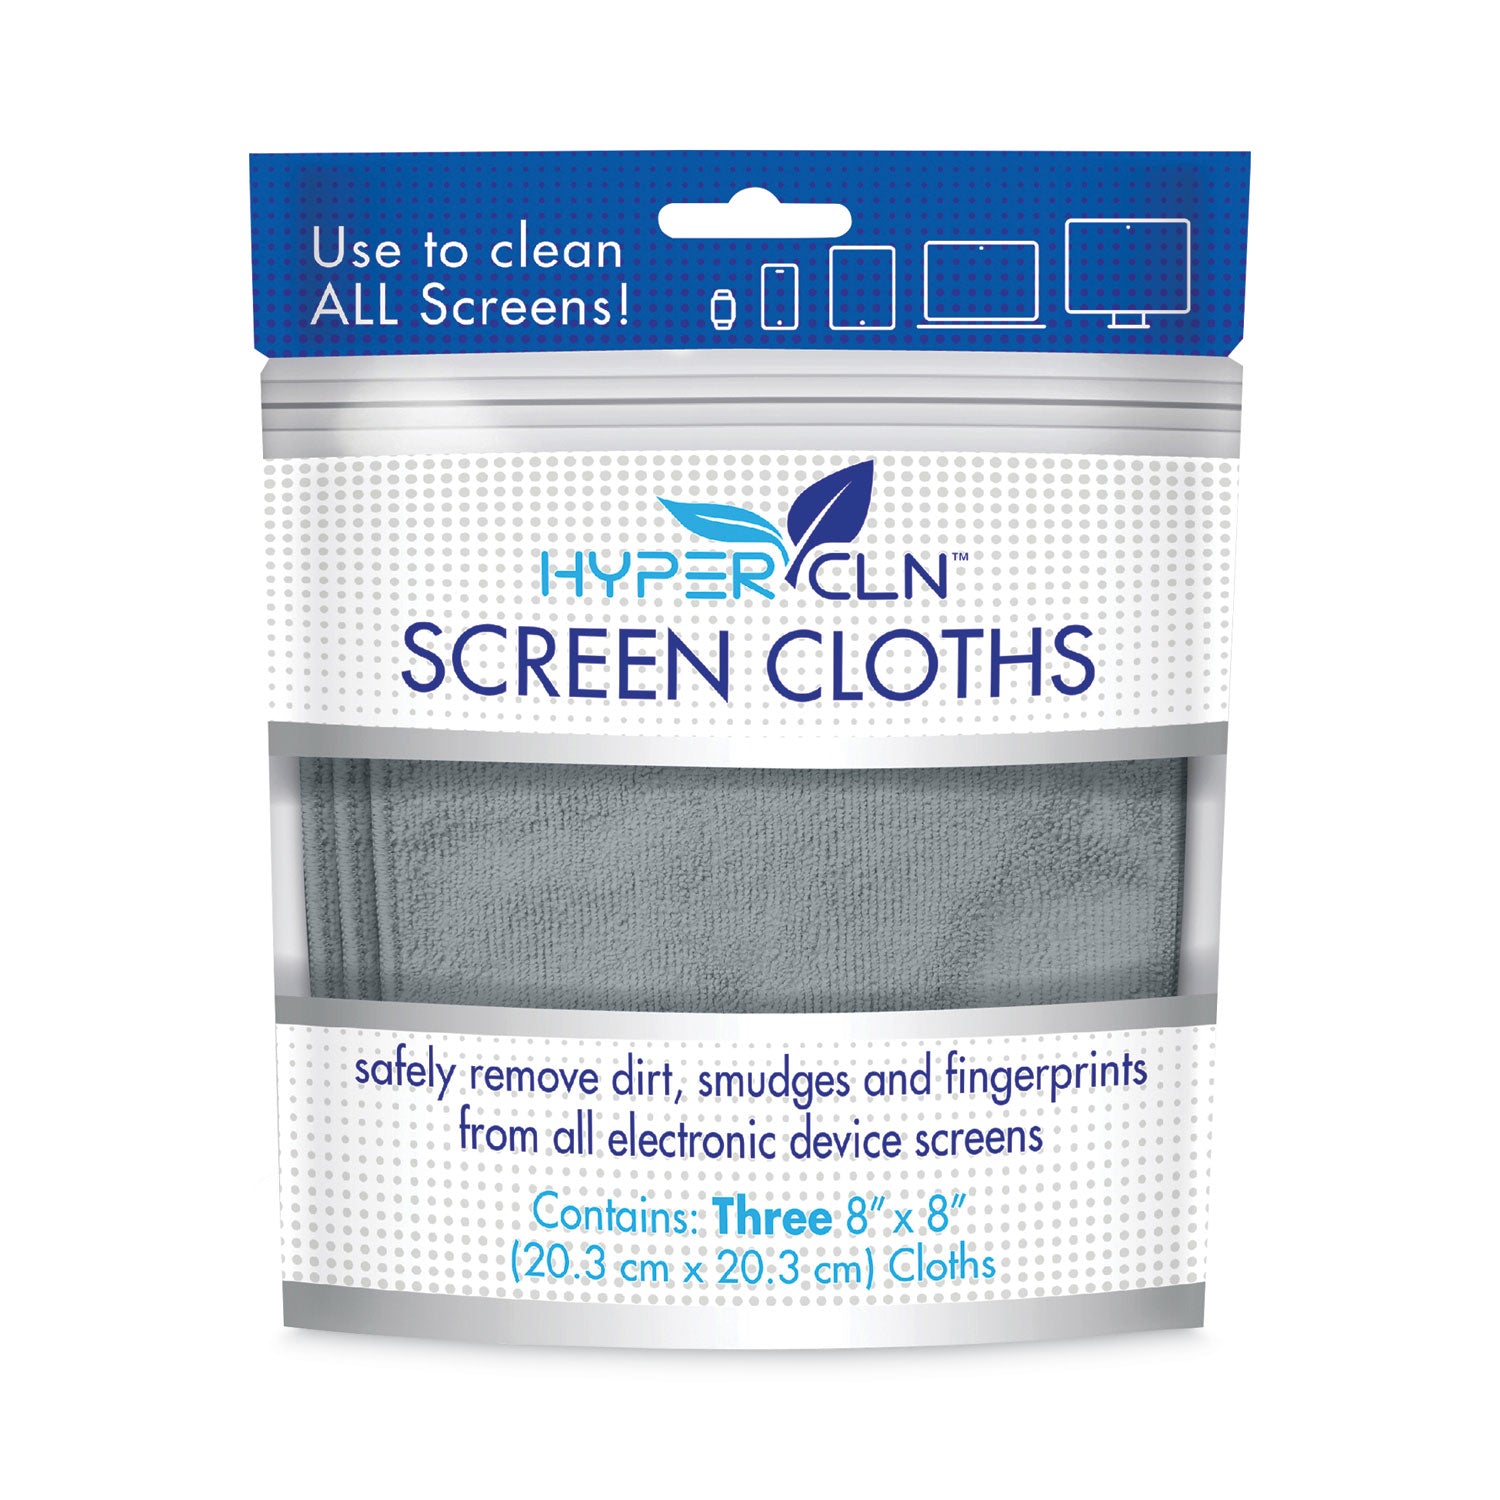 hypercln-screen-cloths-8-x-8-unscented-blue-3-pack_falhcncl - 3